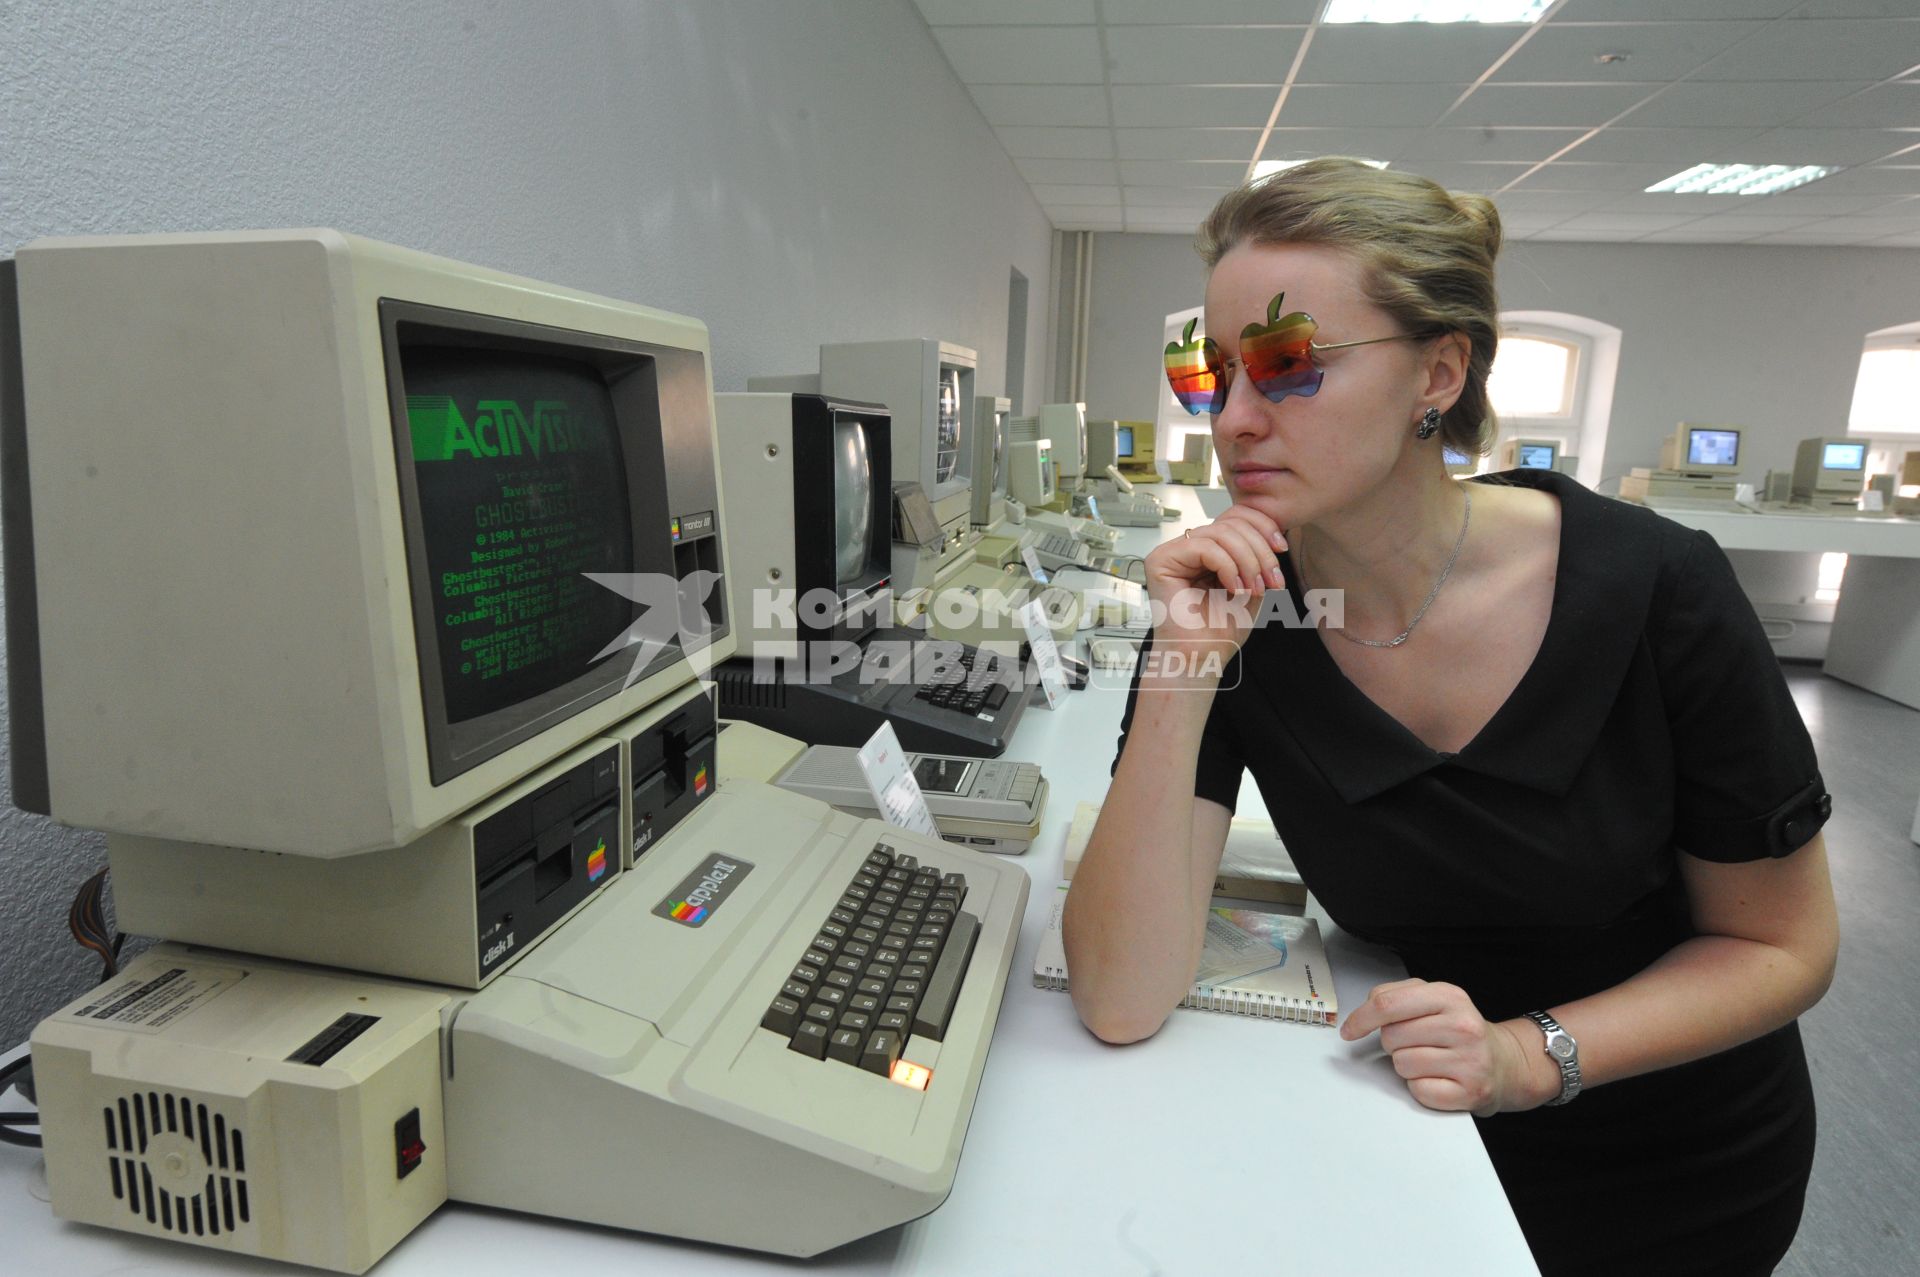 В Москве открылся музей Apple. На снимке: девушка в раритетных очках Apple рядом с компьютером Apple II.